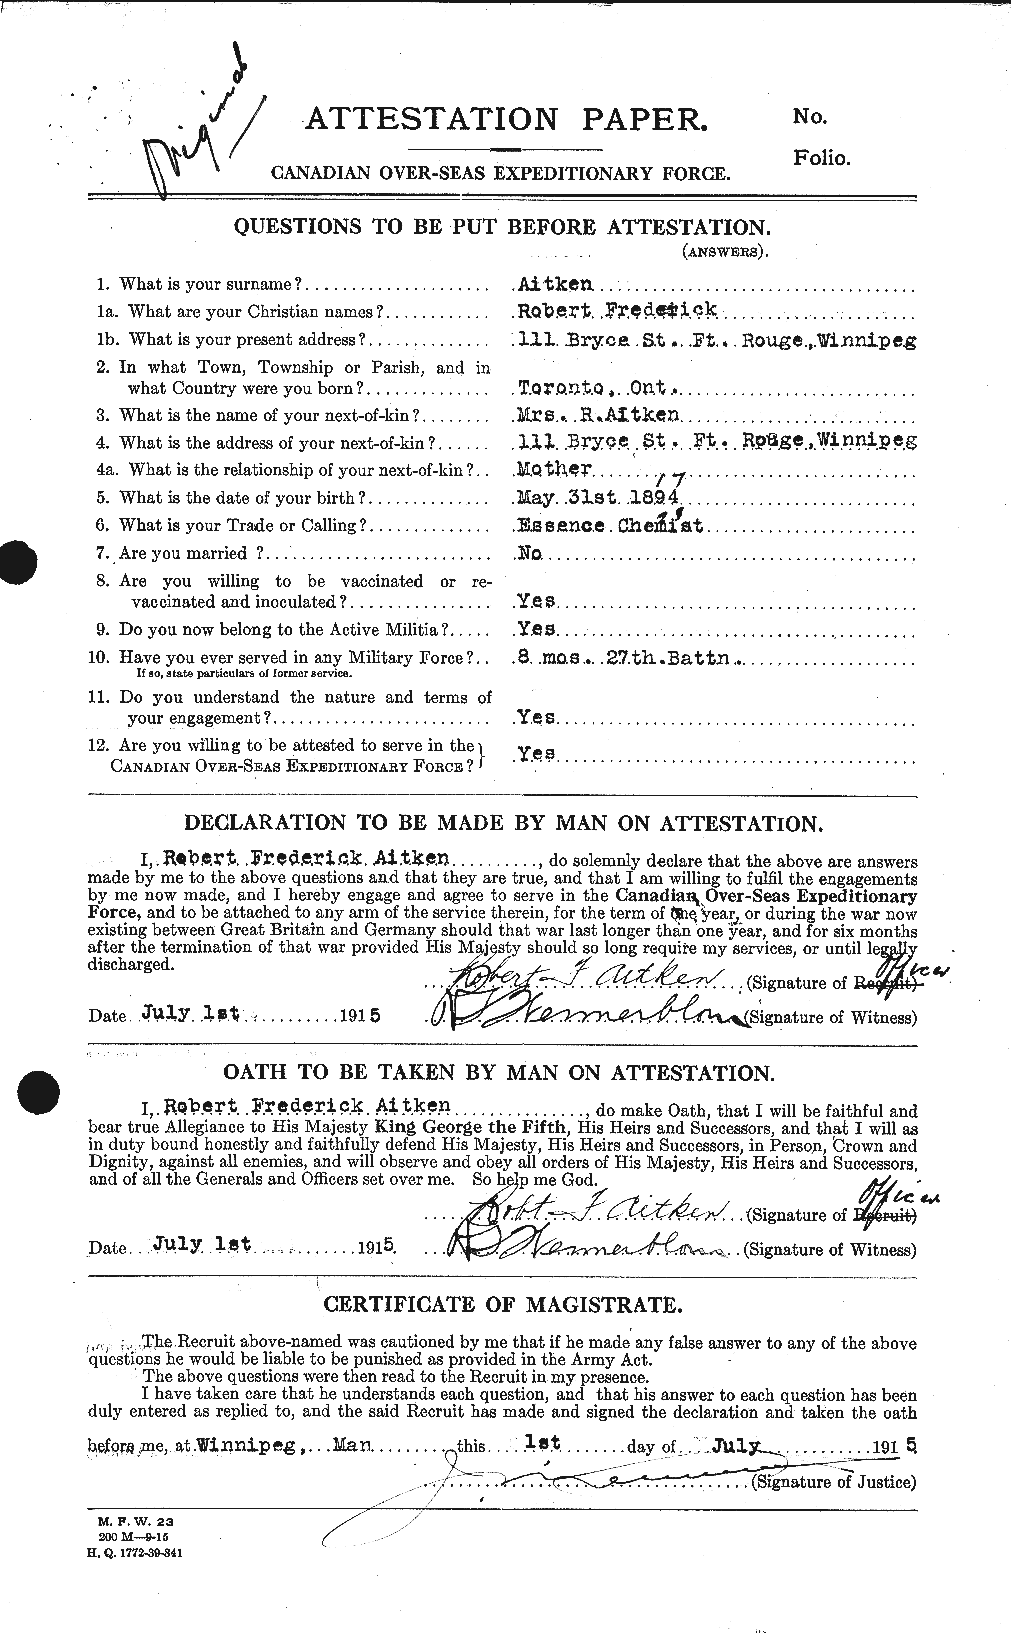 Dossiers du Personnel de la Première Guerre mondiale - CEC 203434a